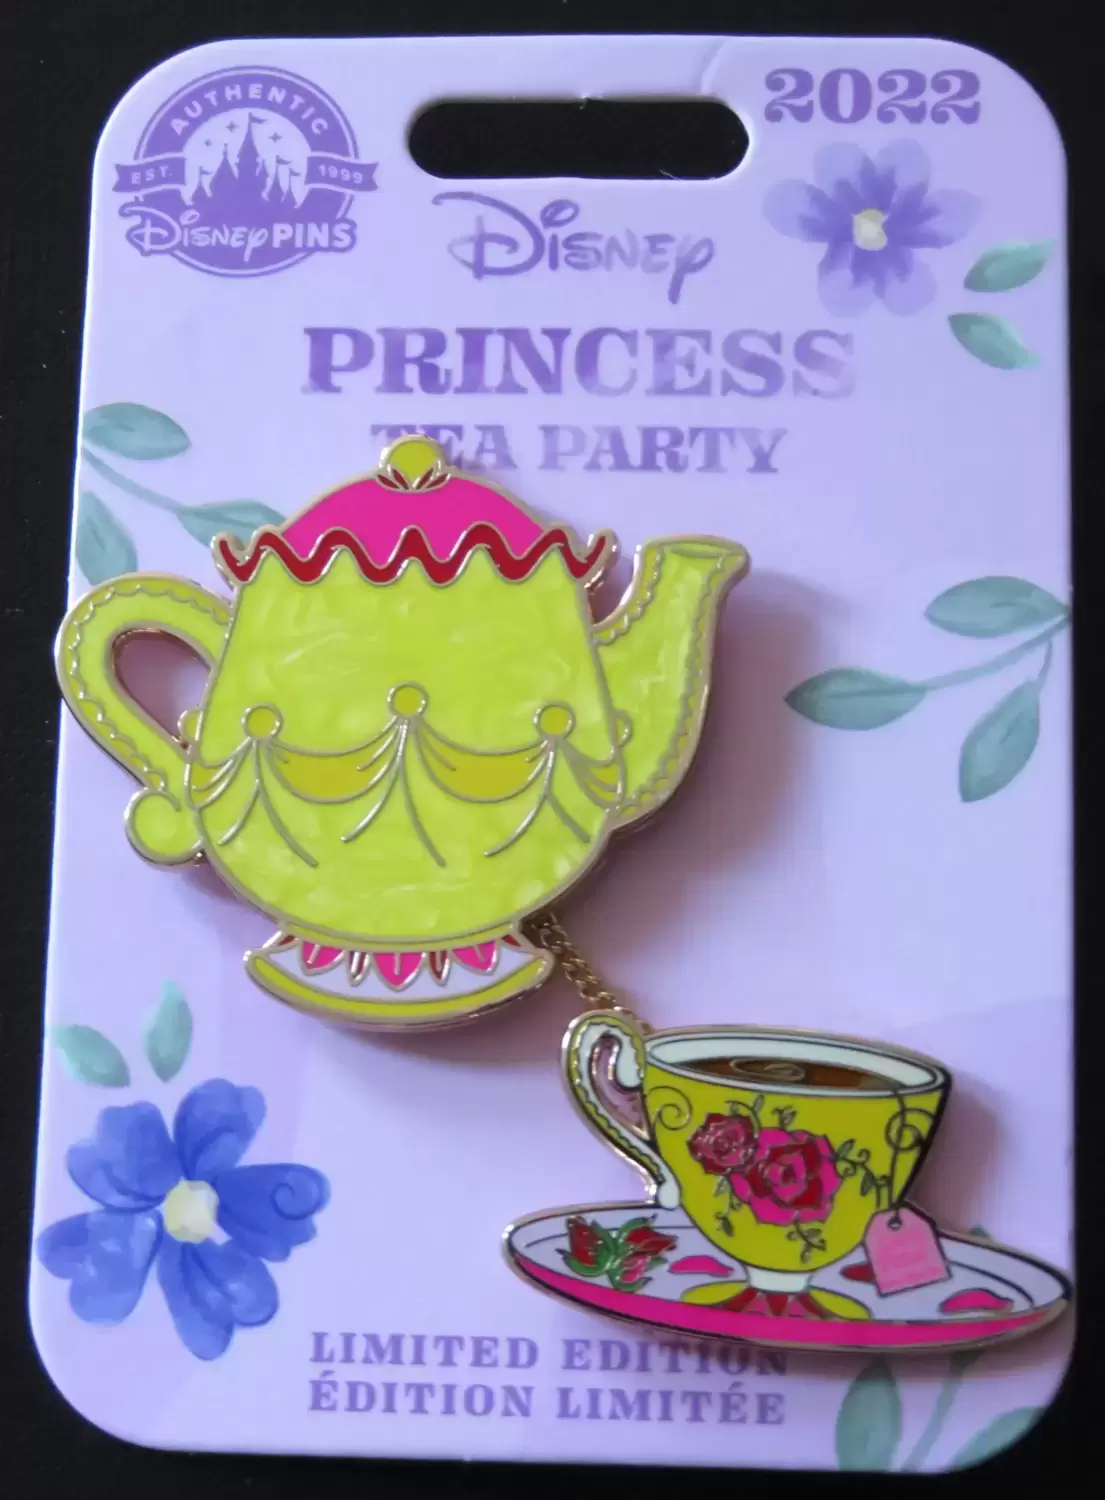 Princess Party - Princess Party - Belle